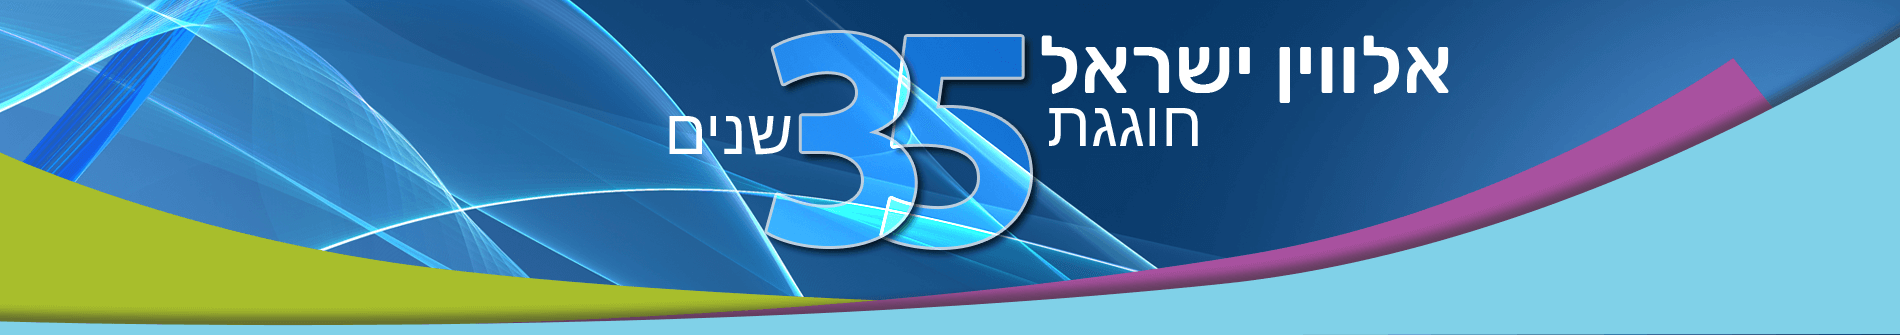 אלווין ישראל חוגגת 35 שנים